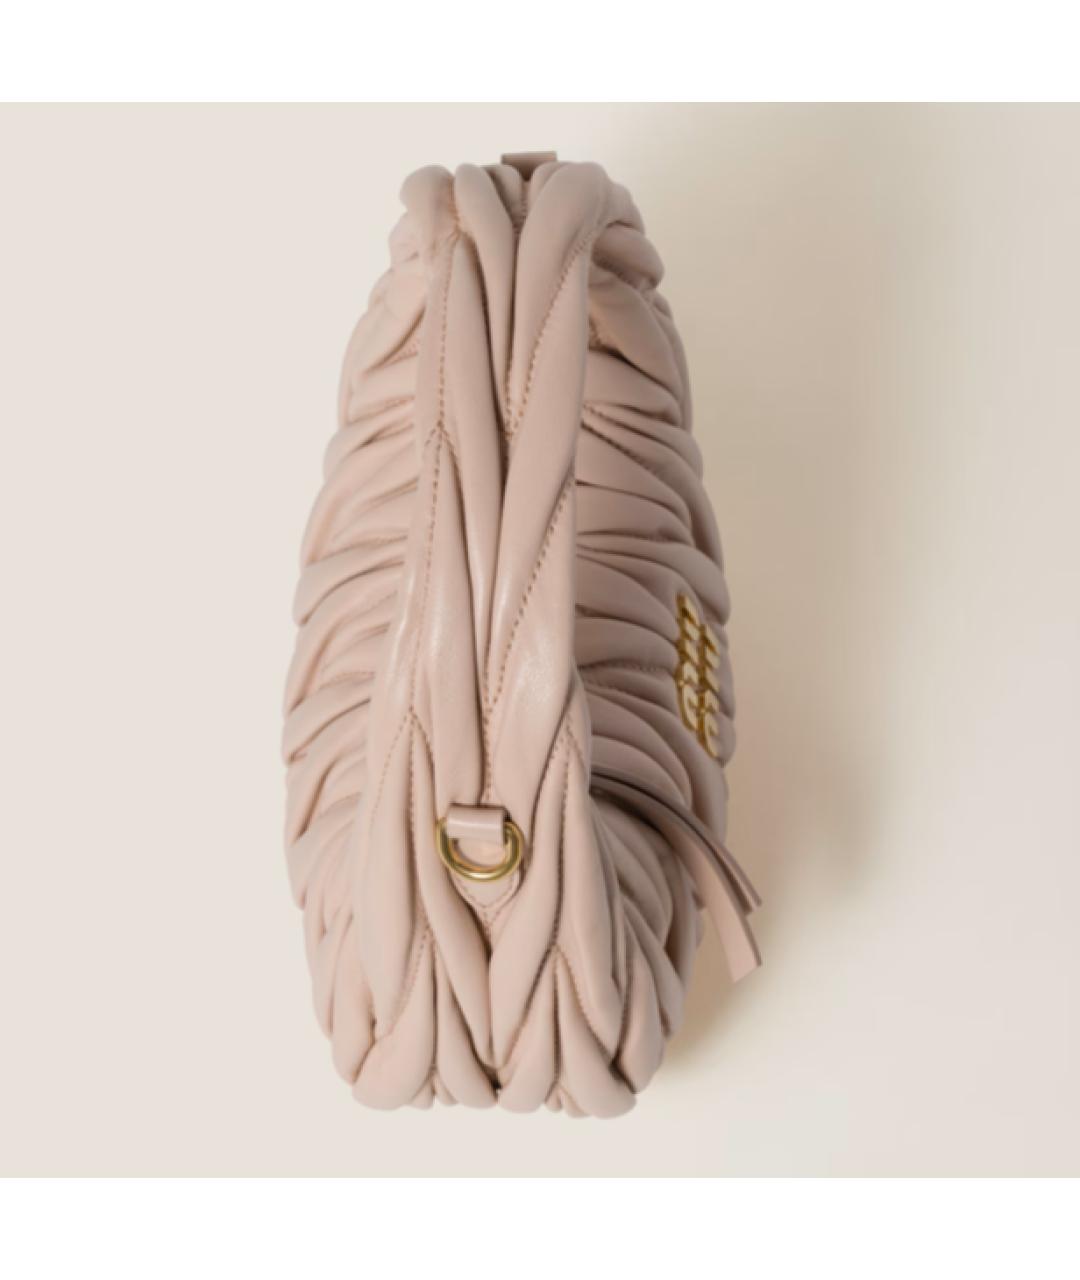 MIU MIU Розовая кожаная сумка с короткими ручками, фото 5